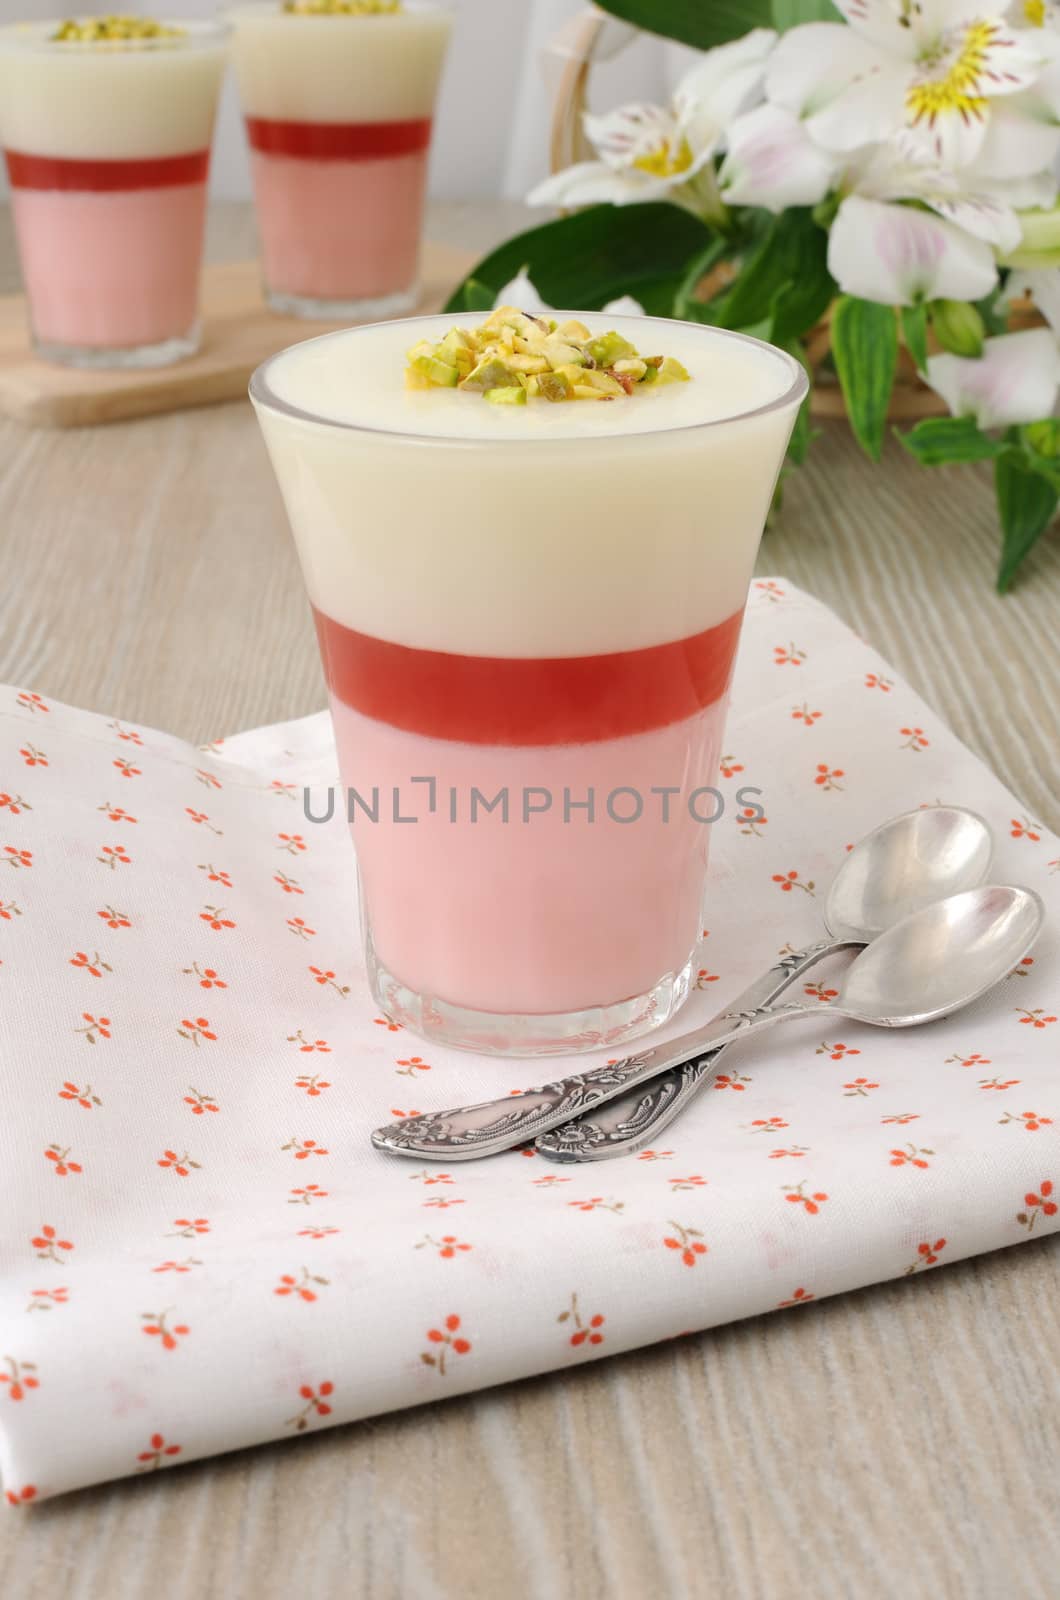 Strawberry yogurt dessert with pistachios by Apolonia